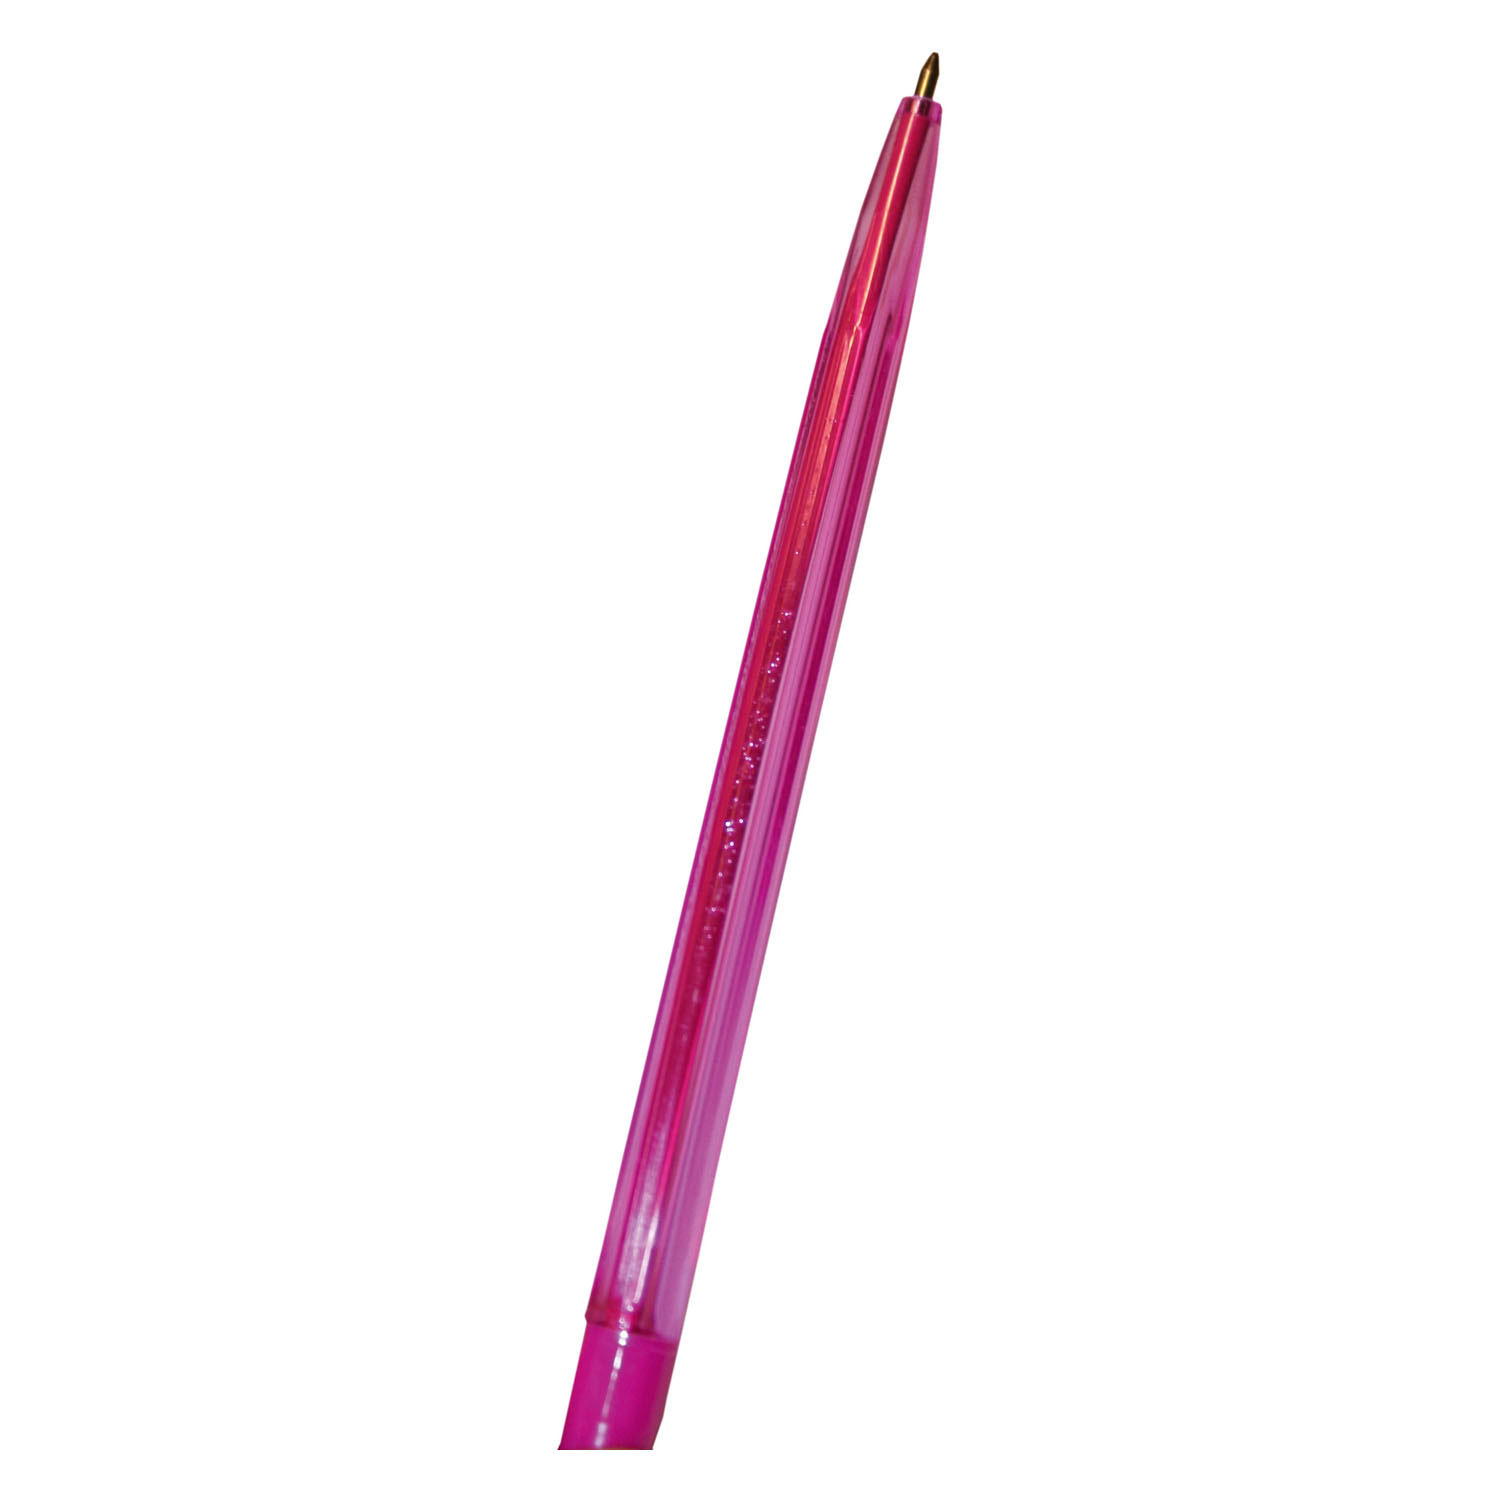 Kugelschreiber - Regenbogenfarben, 10 Stück.